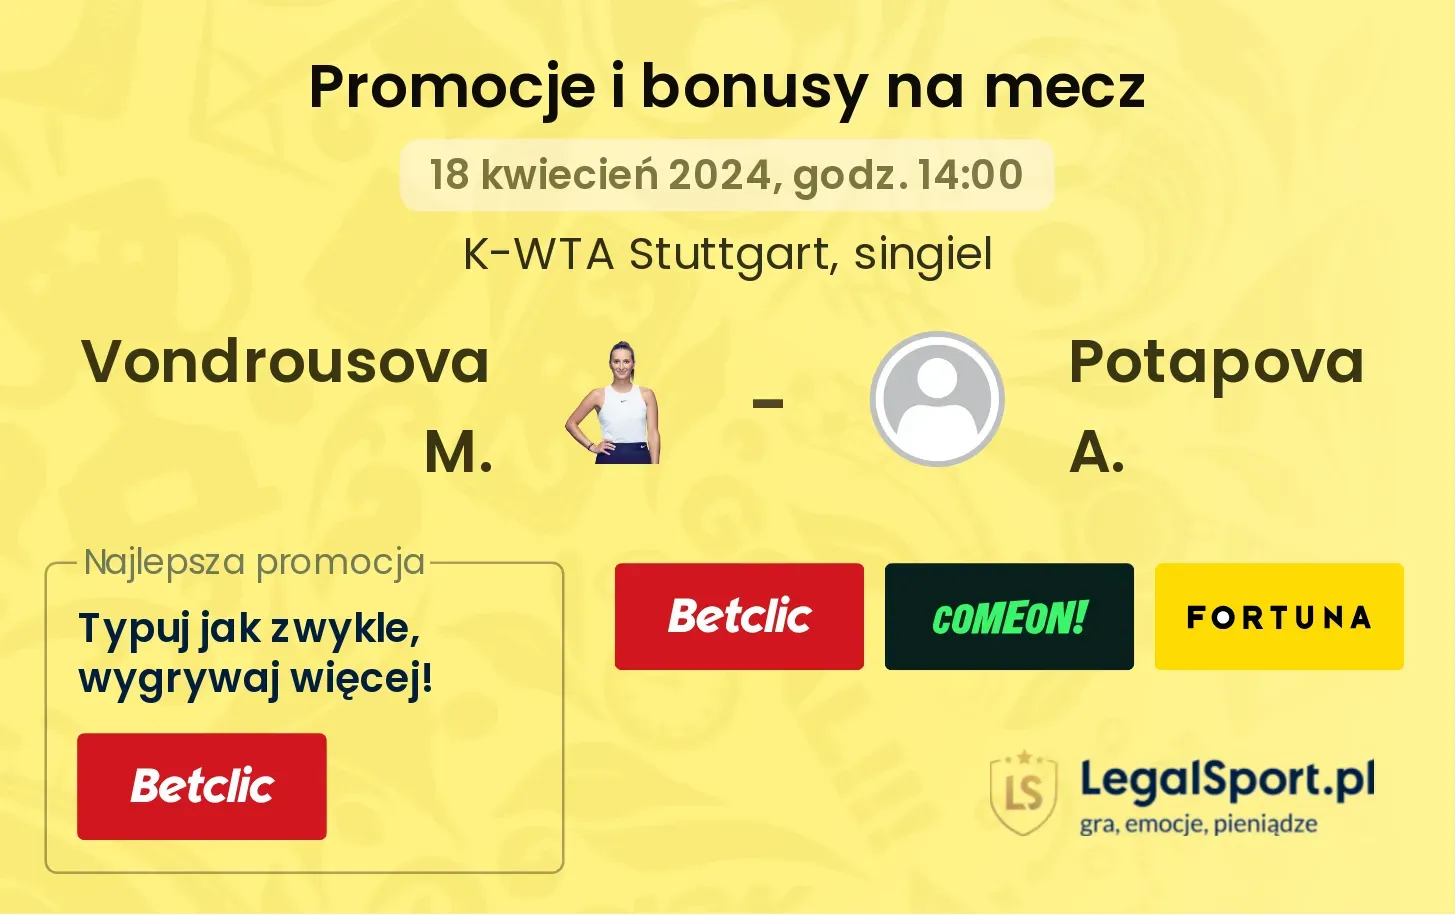 Vondrousova M. - Potapova A. promocje bonusy na mecz